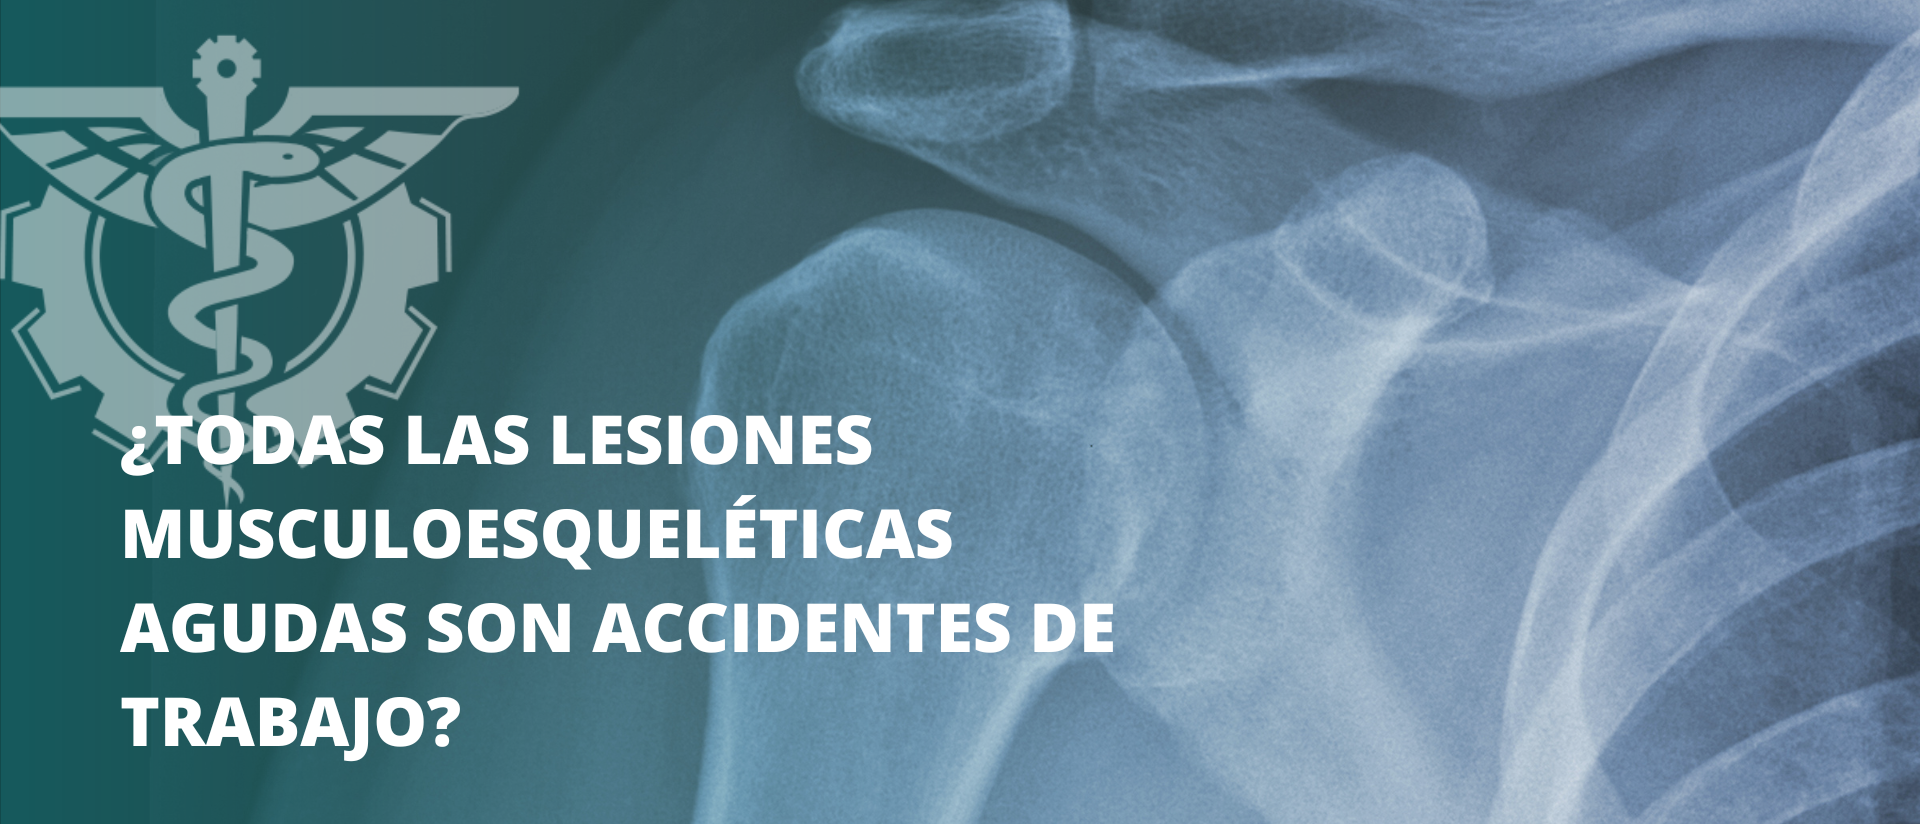 Caso de estudio: ¿Todas las lesiones musculoesqueléticas agudas son accidentes de trabajo?